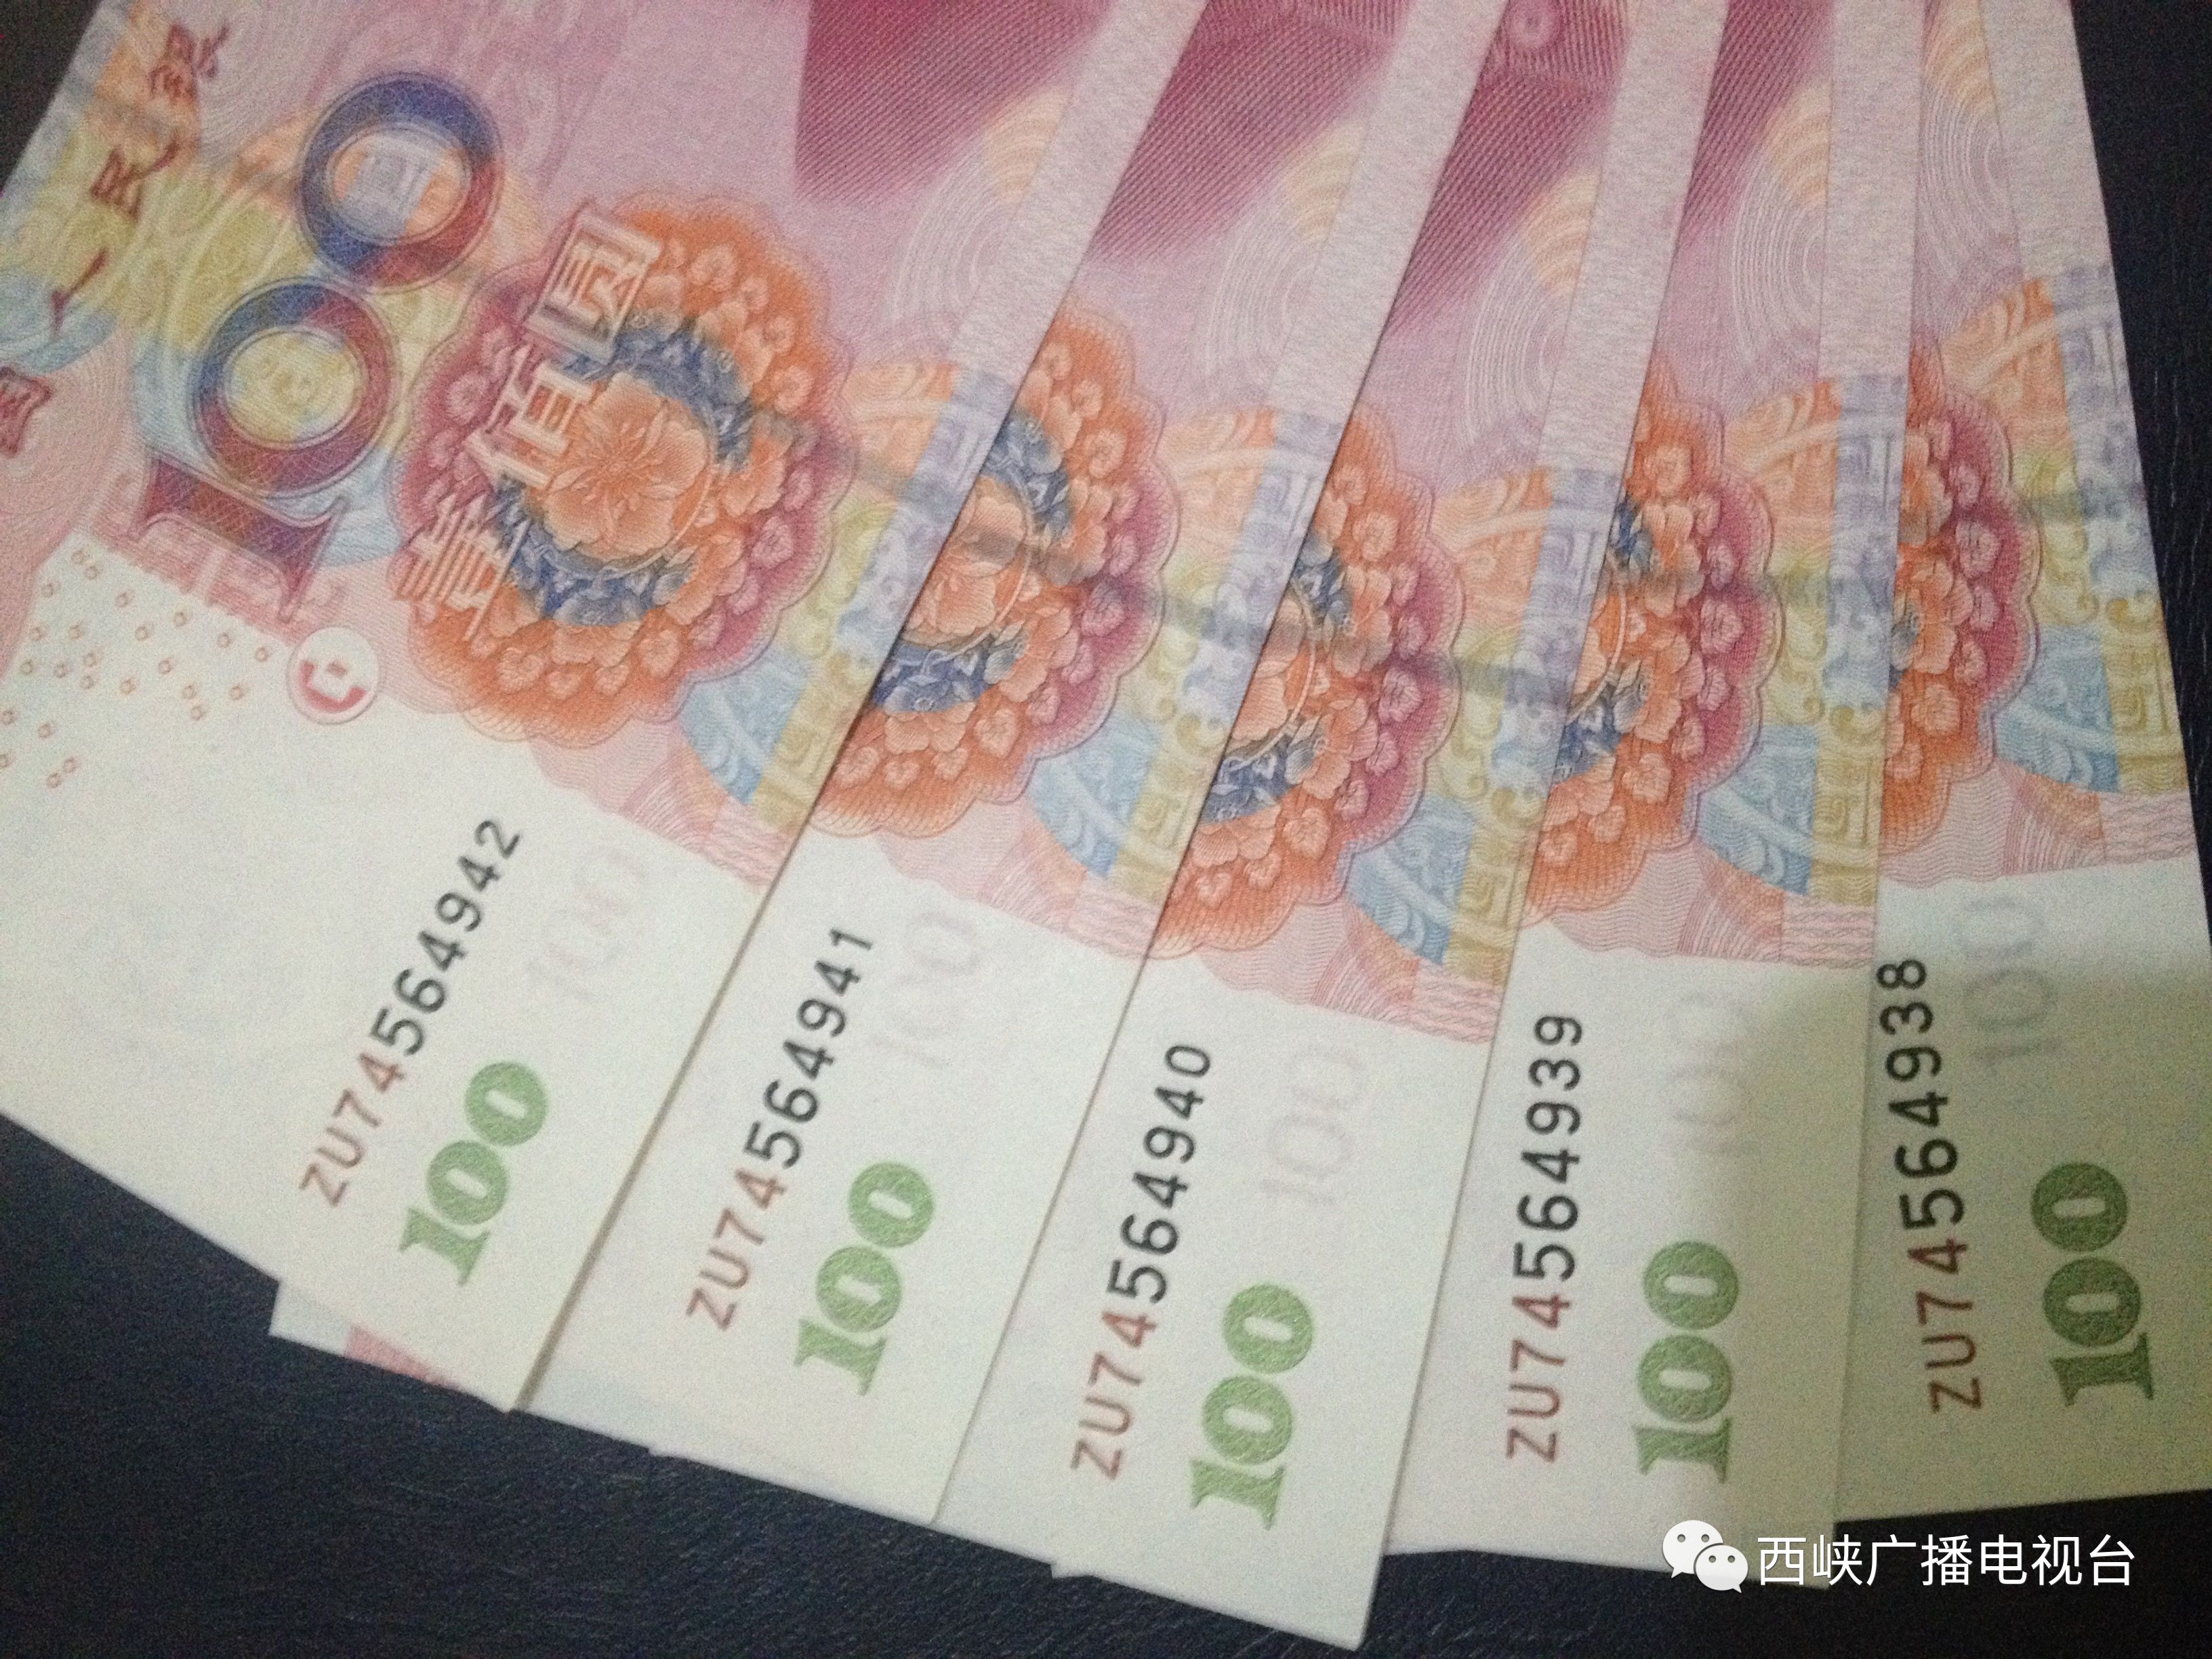 柳州保洁大姐捡到一个袋子 打开一看有6万多元现金-桂林生活网新闻中心